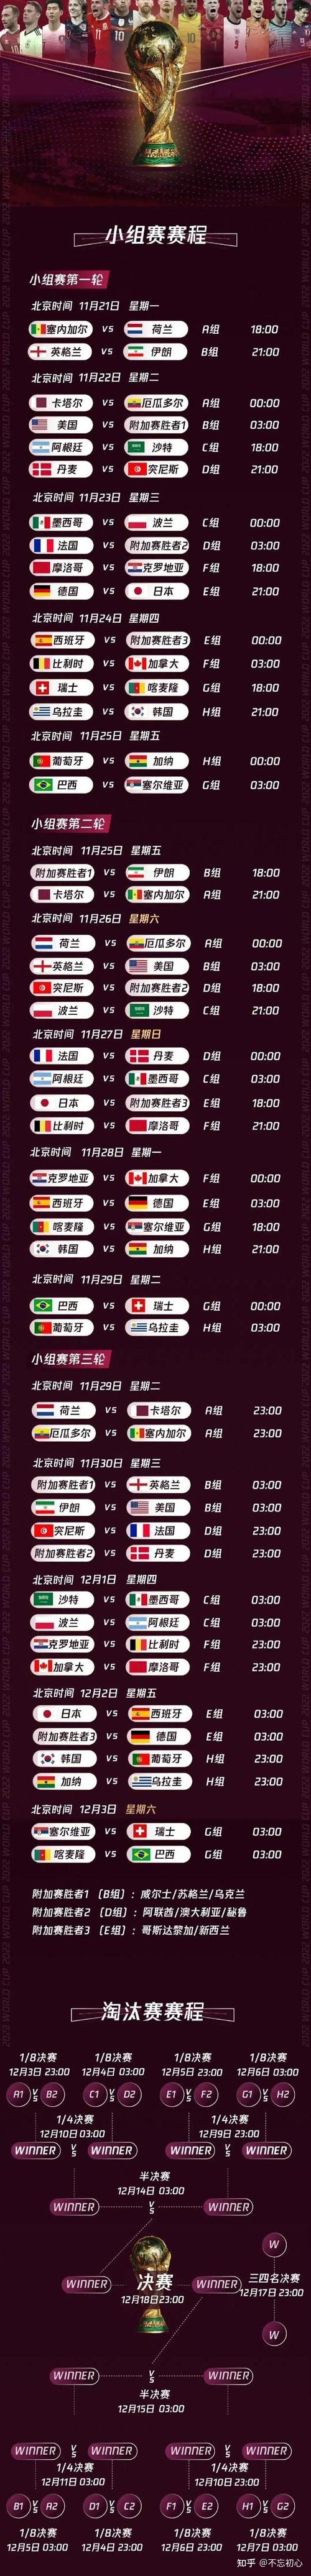 中国世界杯预选赛2022赛程